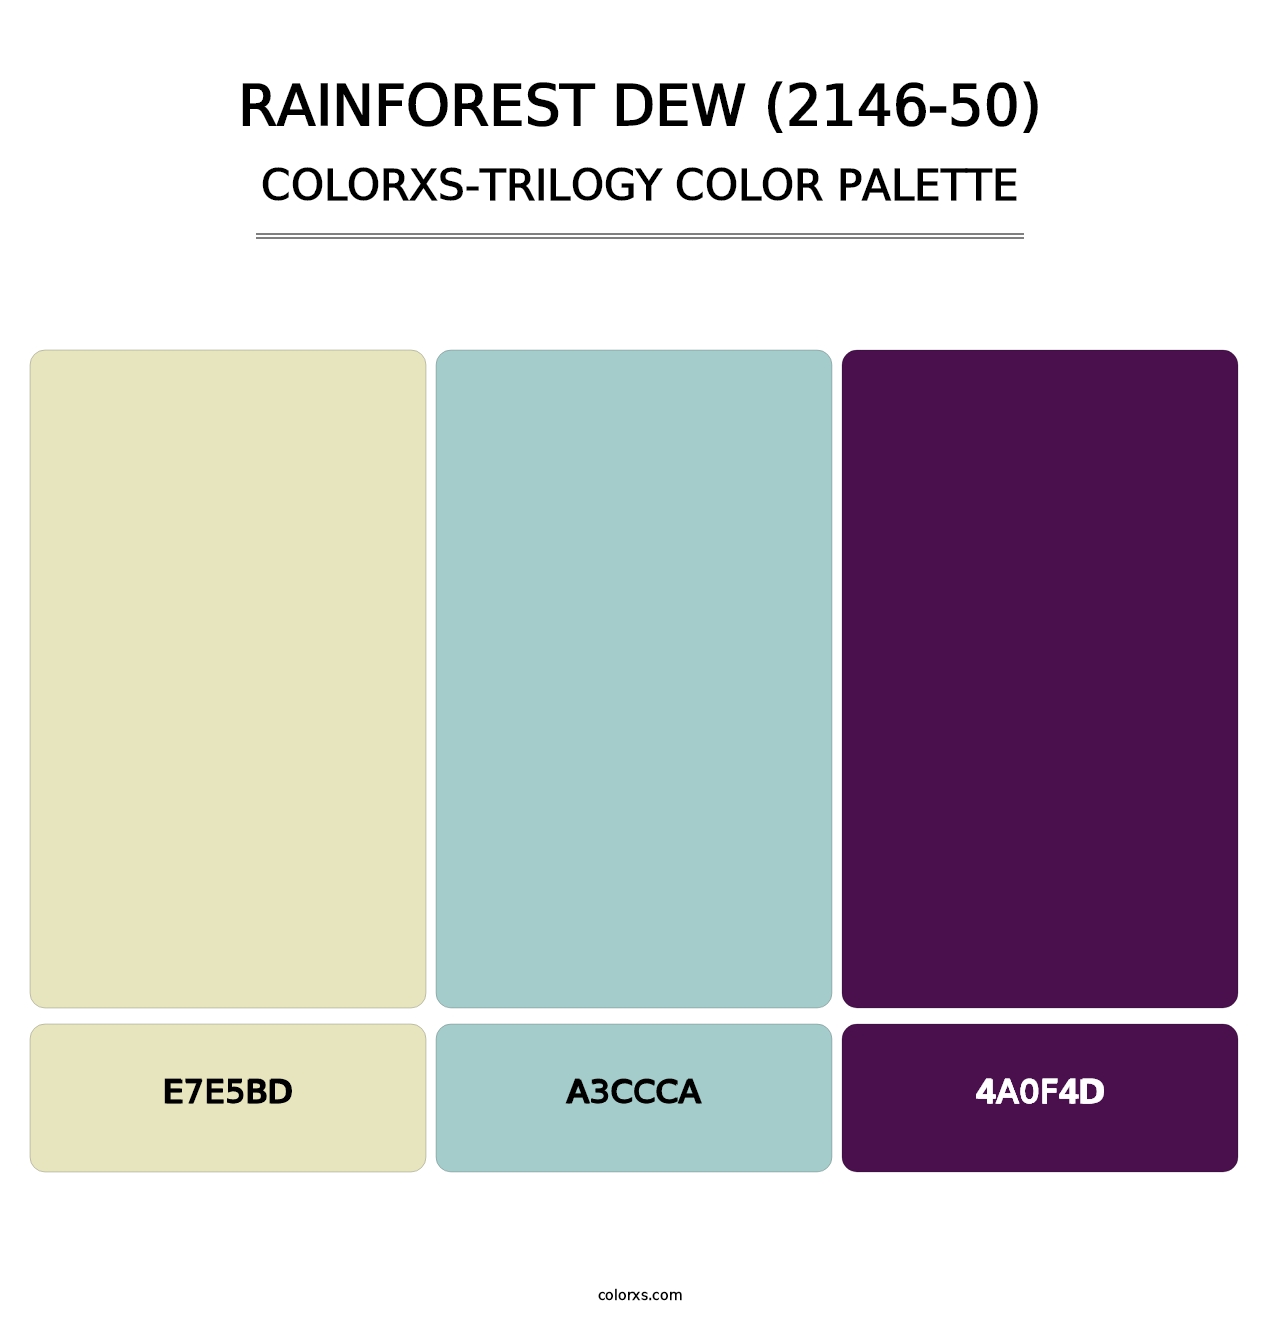 Rainforest Dew (2146-50) - Colorxs Trilogy Palette